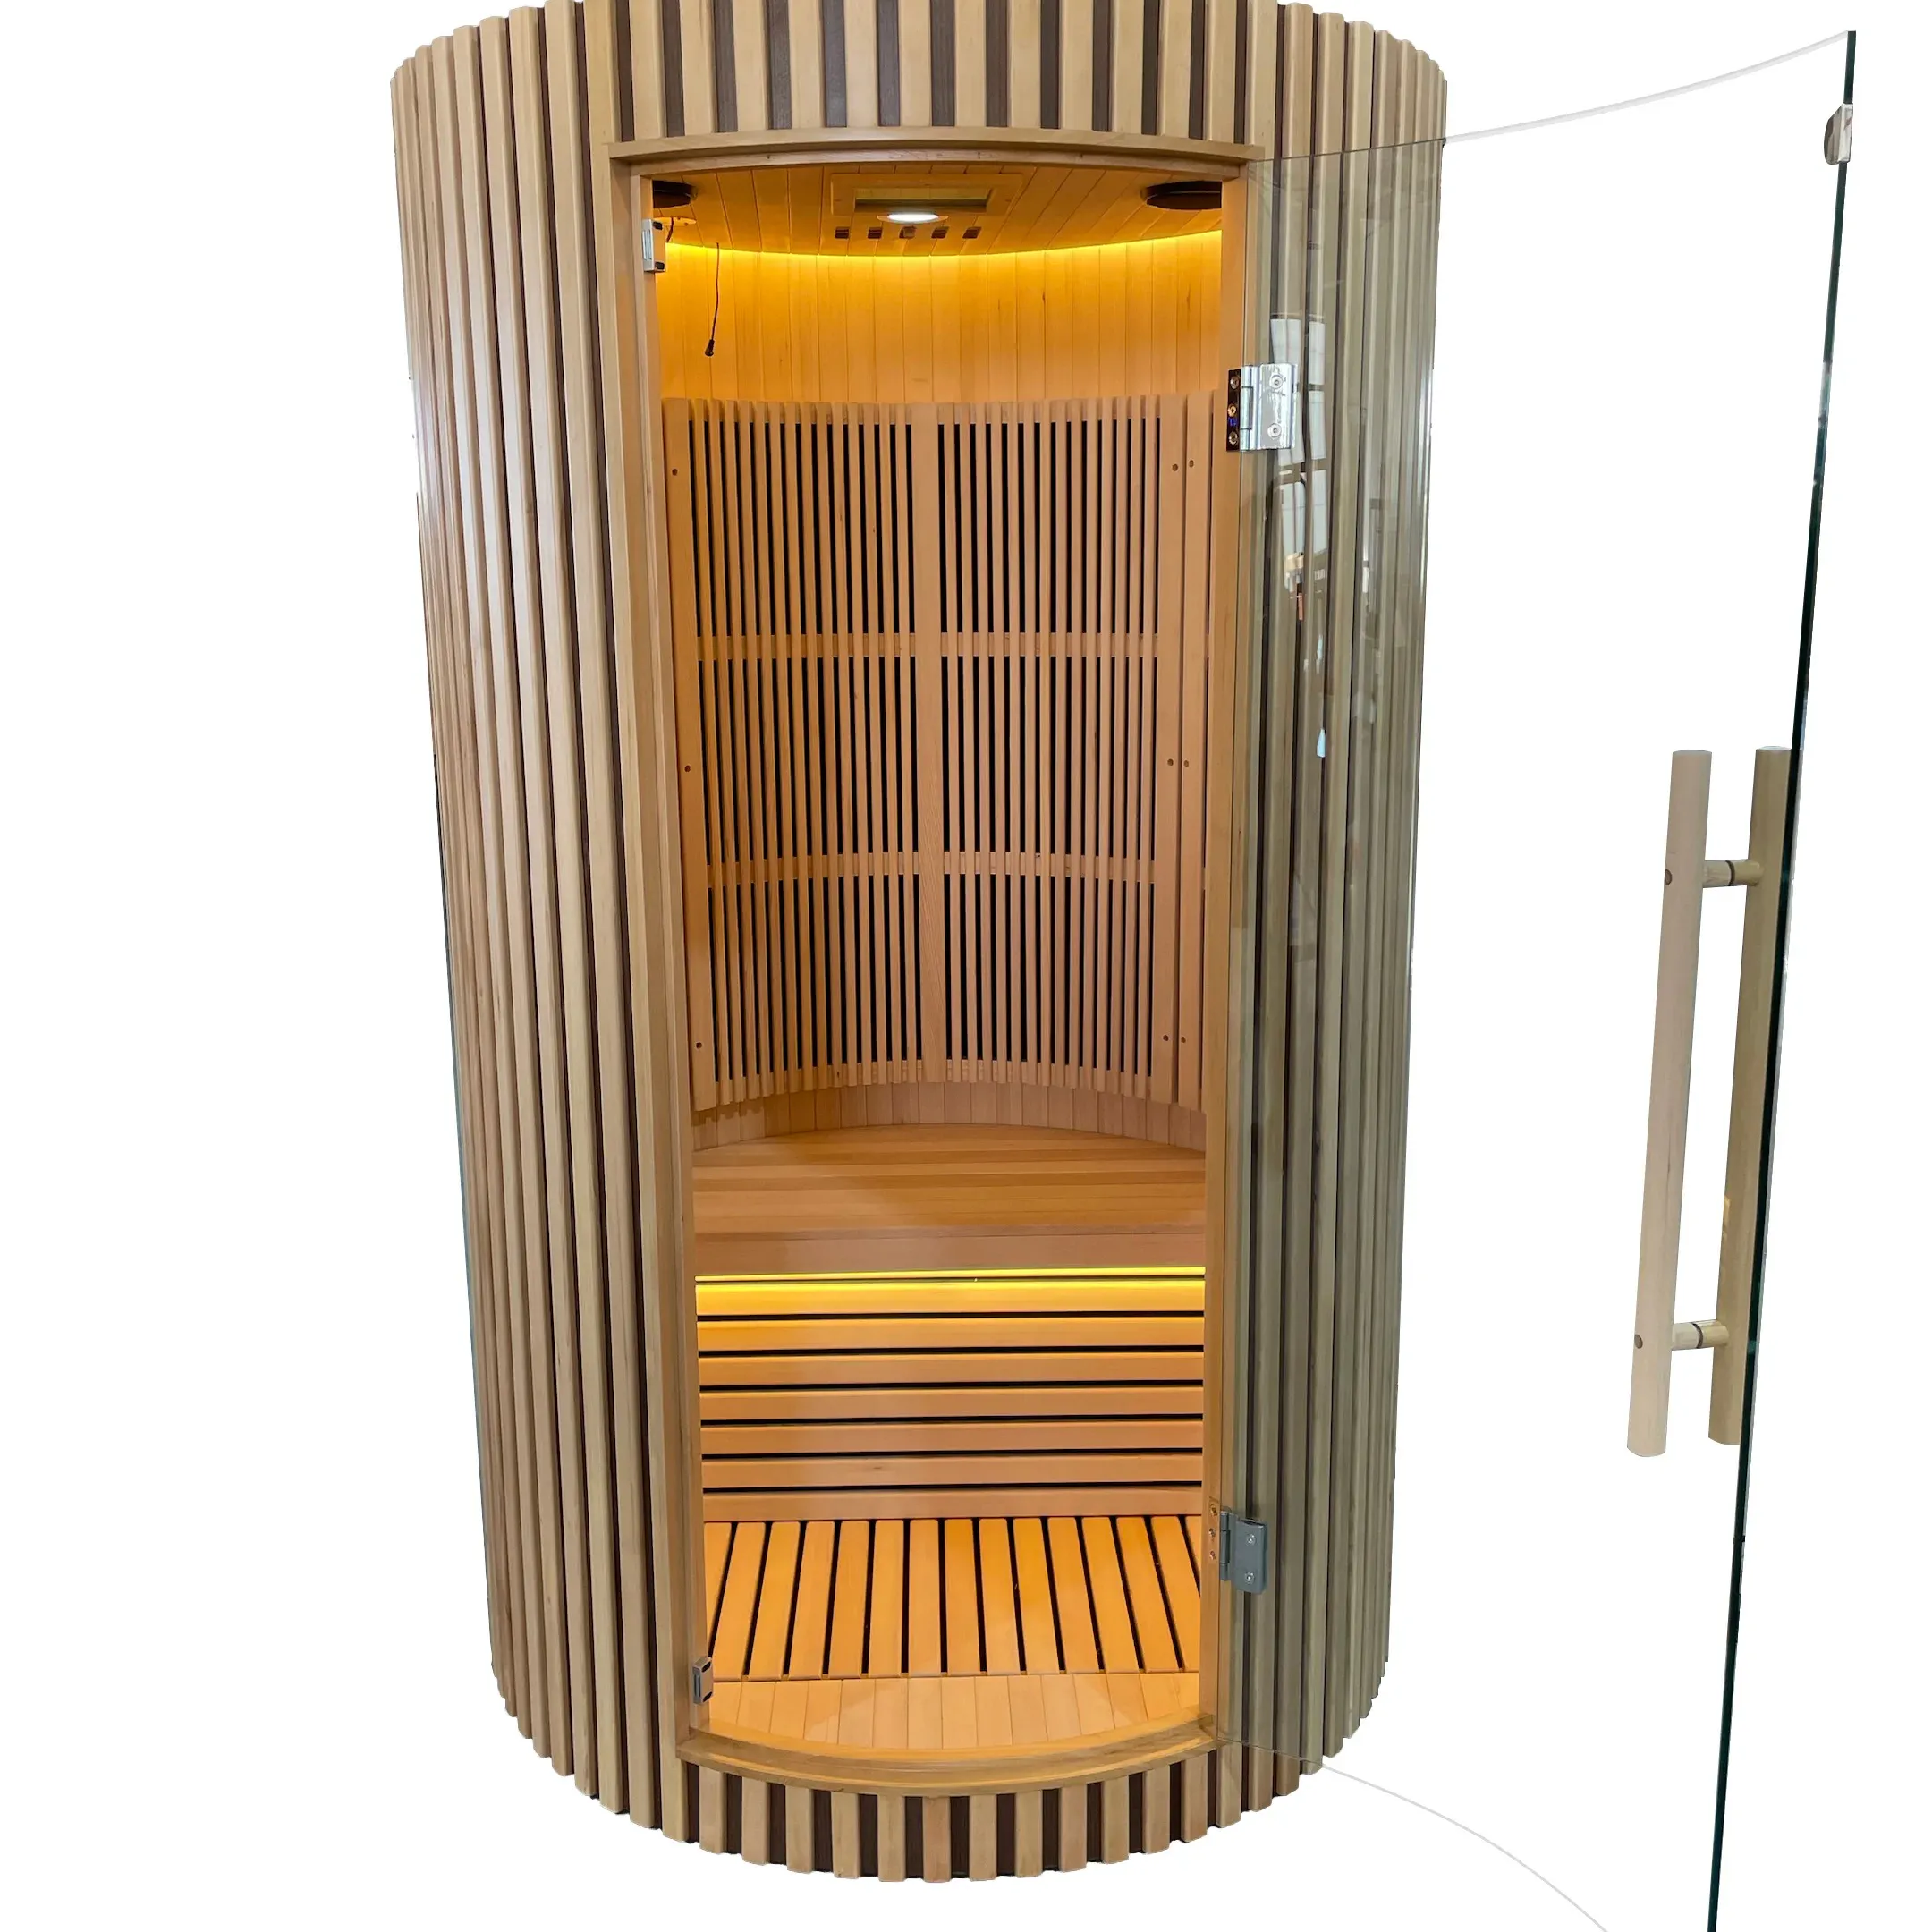 Cabine de sauna infrarouge lointain moderne intérieur salle de sauna infrarouge pour 1 à 2 personnes